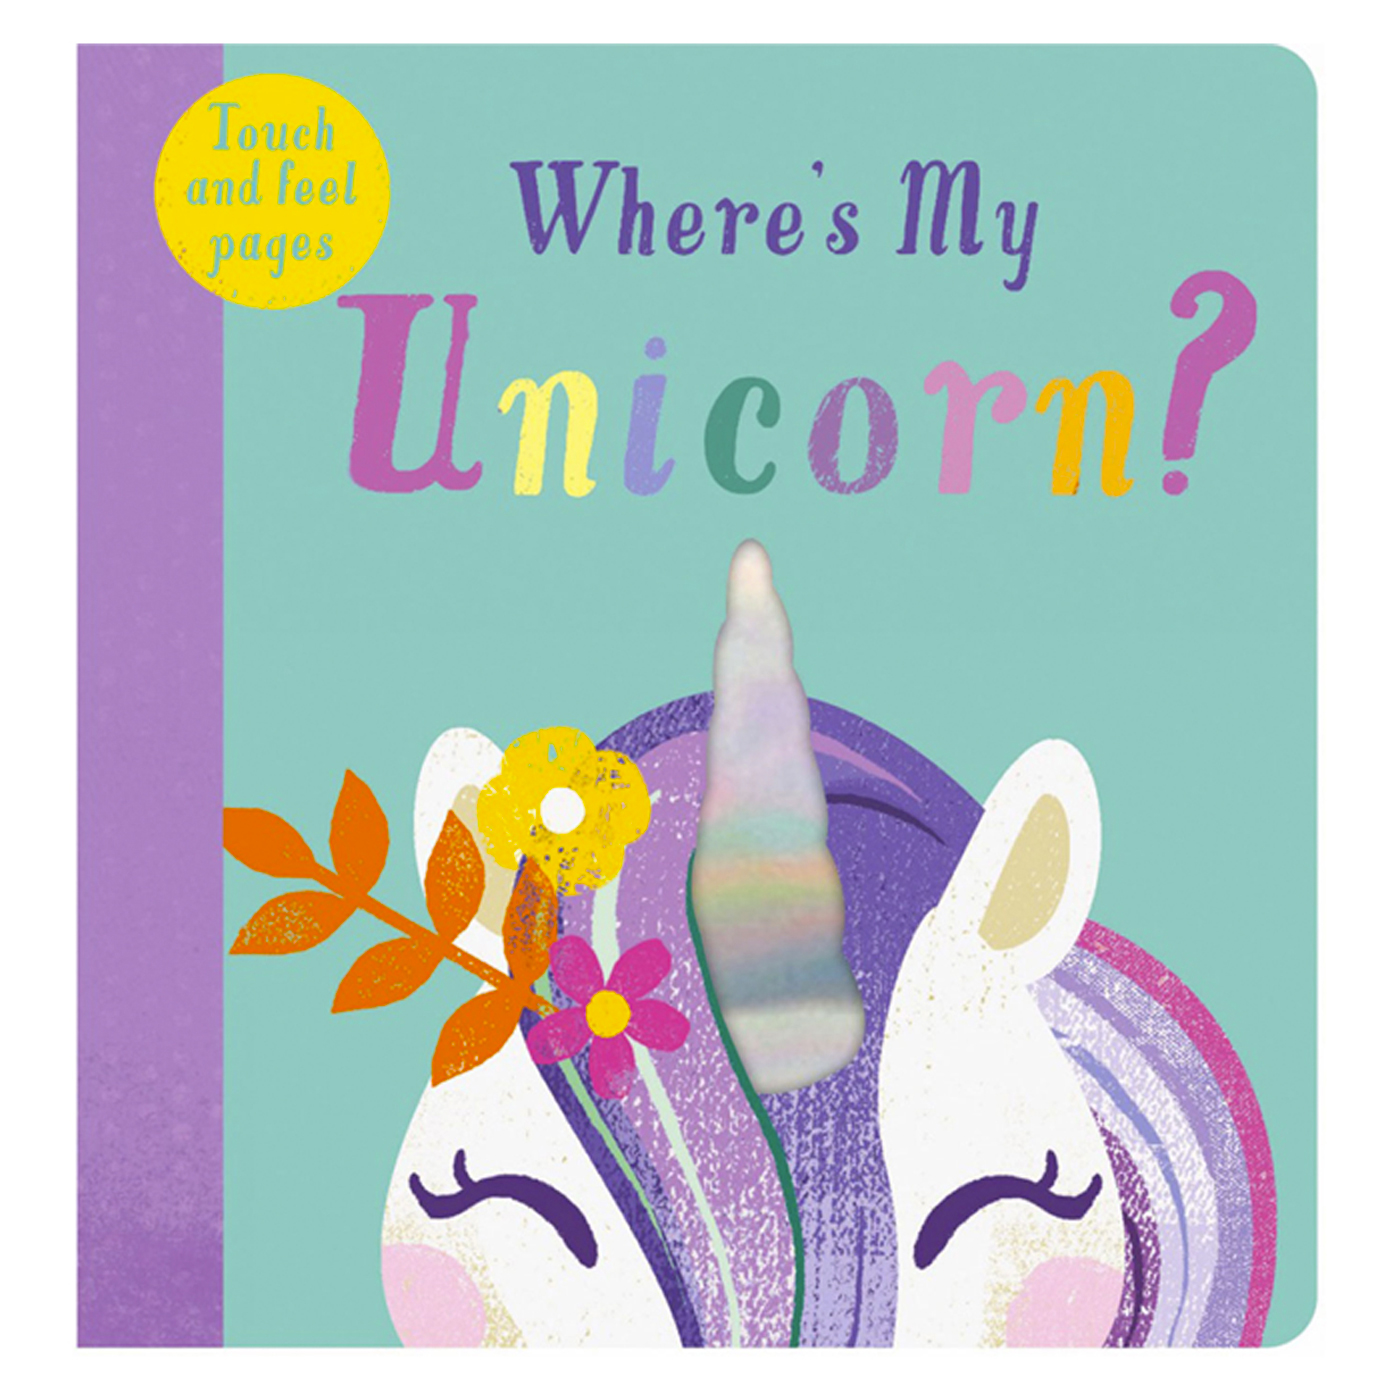  Where’s My Unicorn?